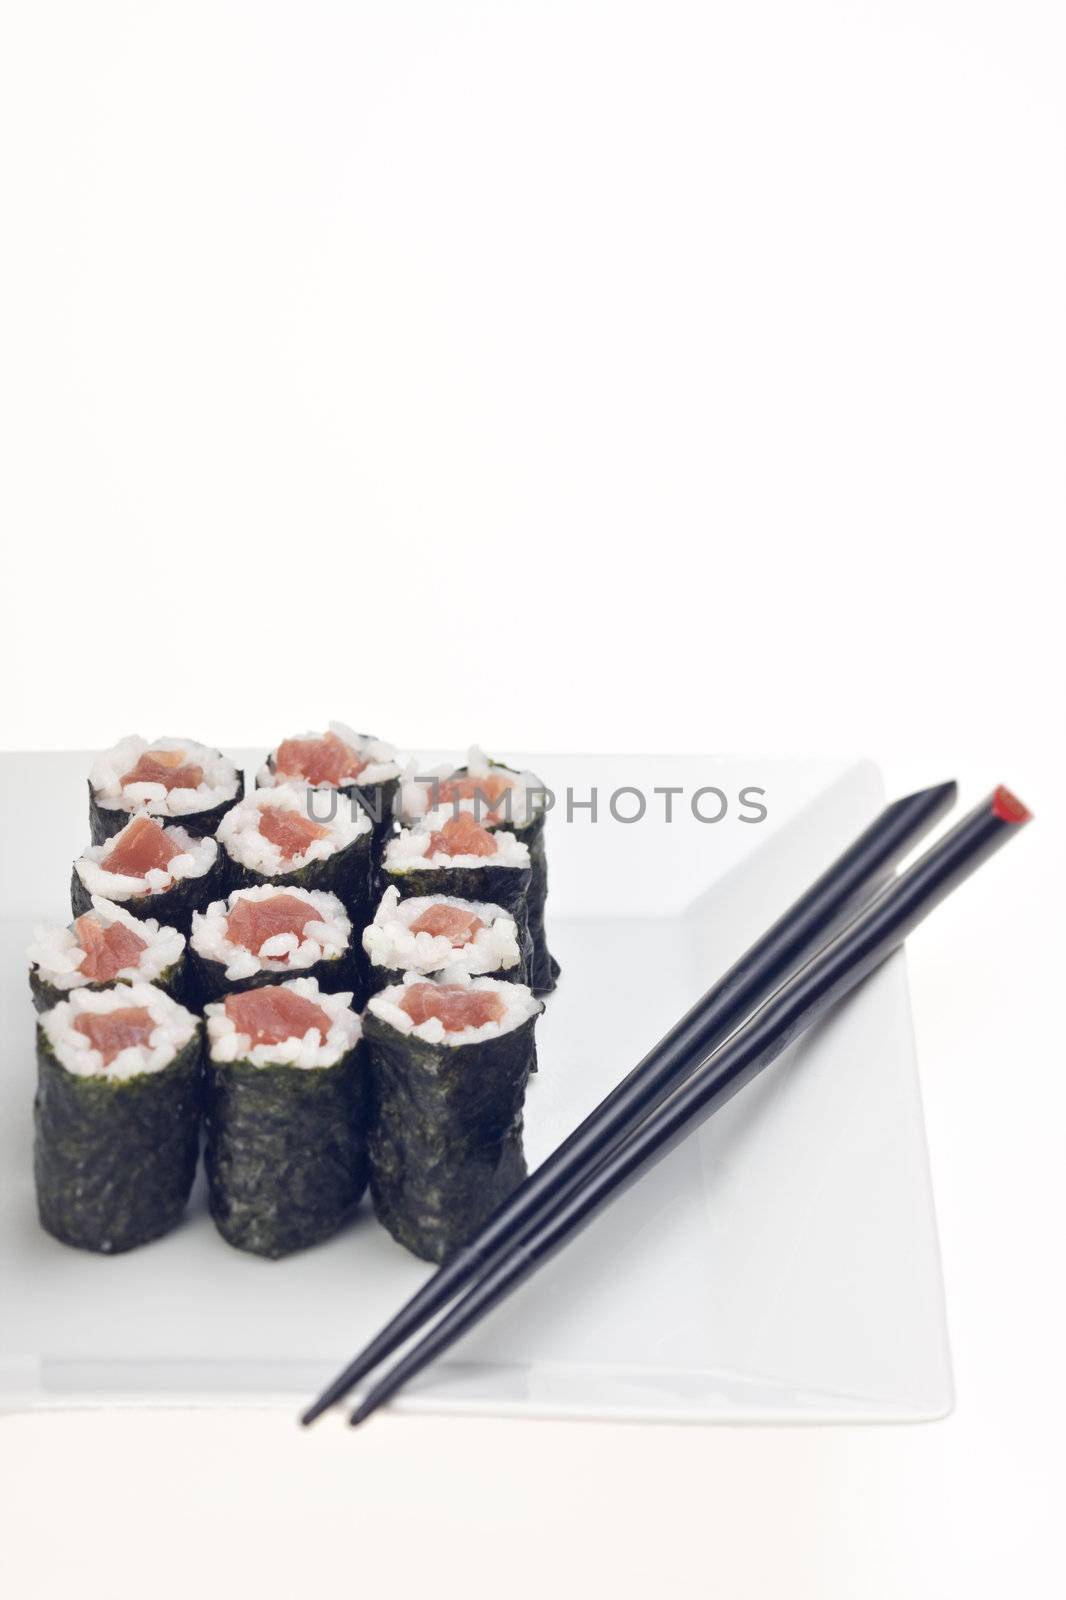 raw tunafish sushi by bernjuer